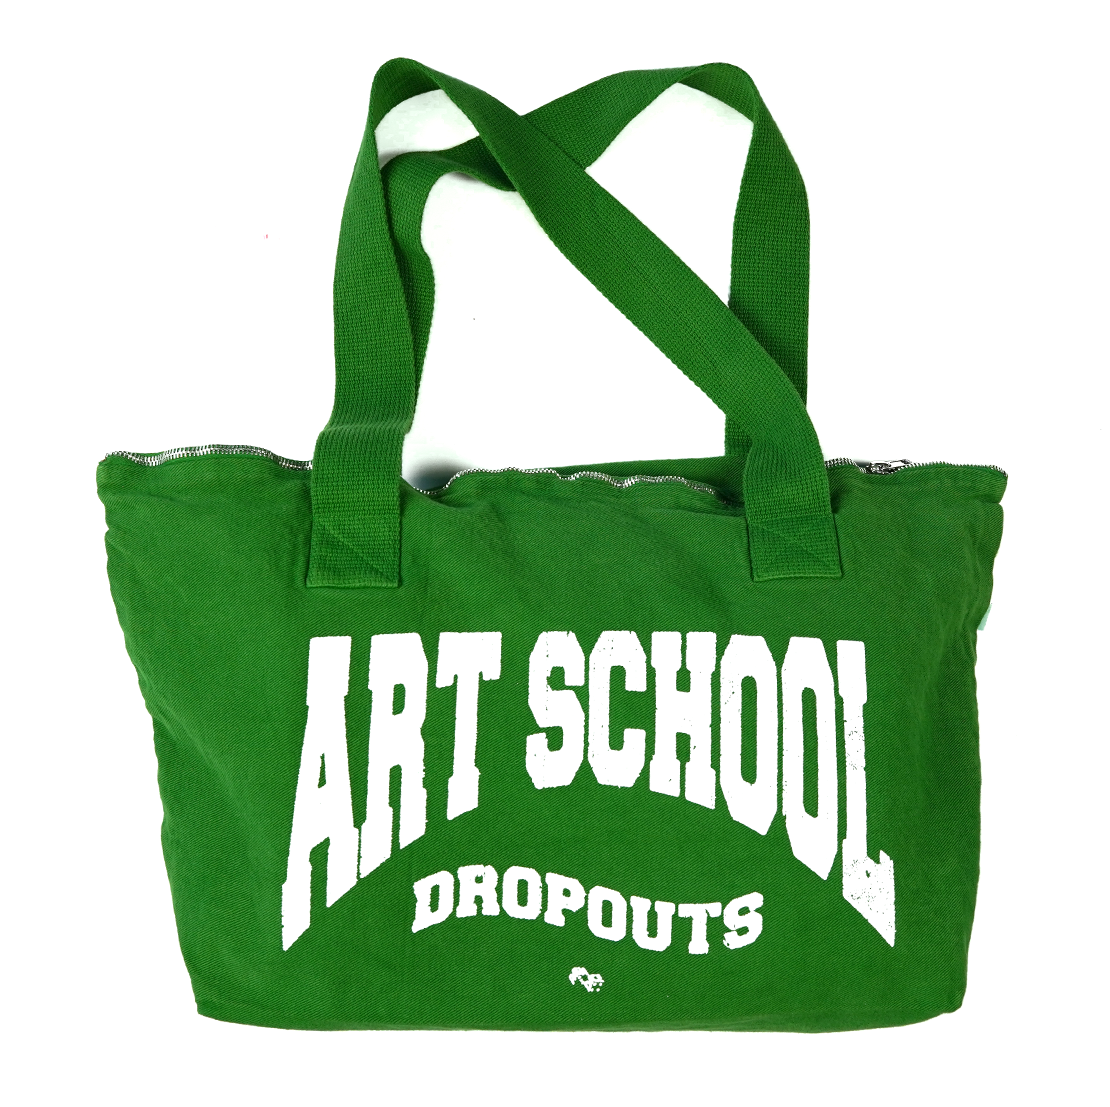 Art School Dropout Denim Bag (Clover)